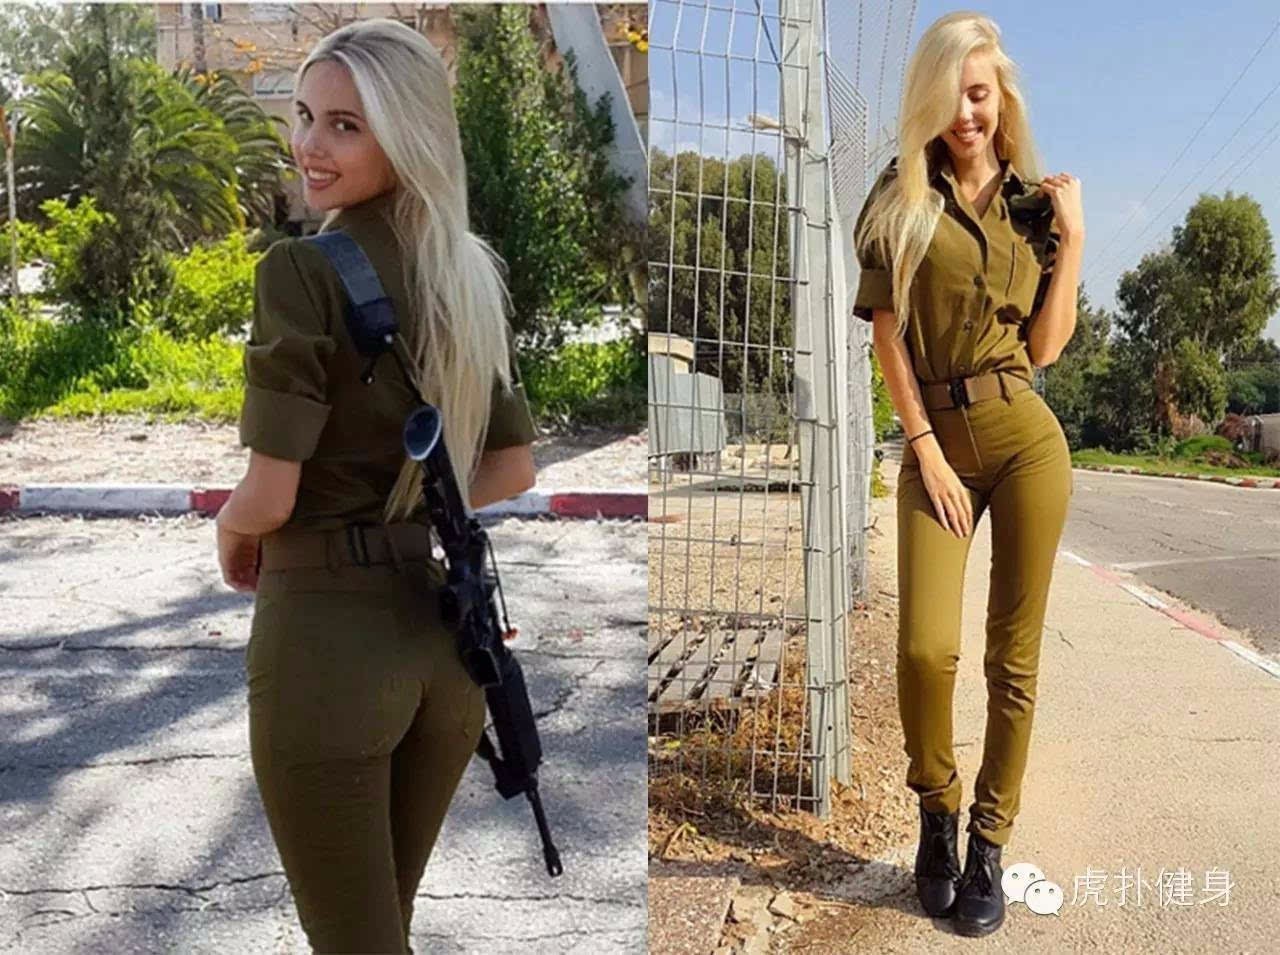 以色列"模特女兵"颜值倾国倾城,网友:世界最美